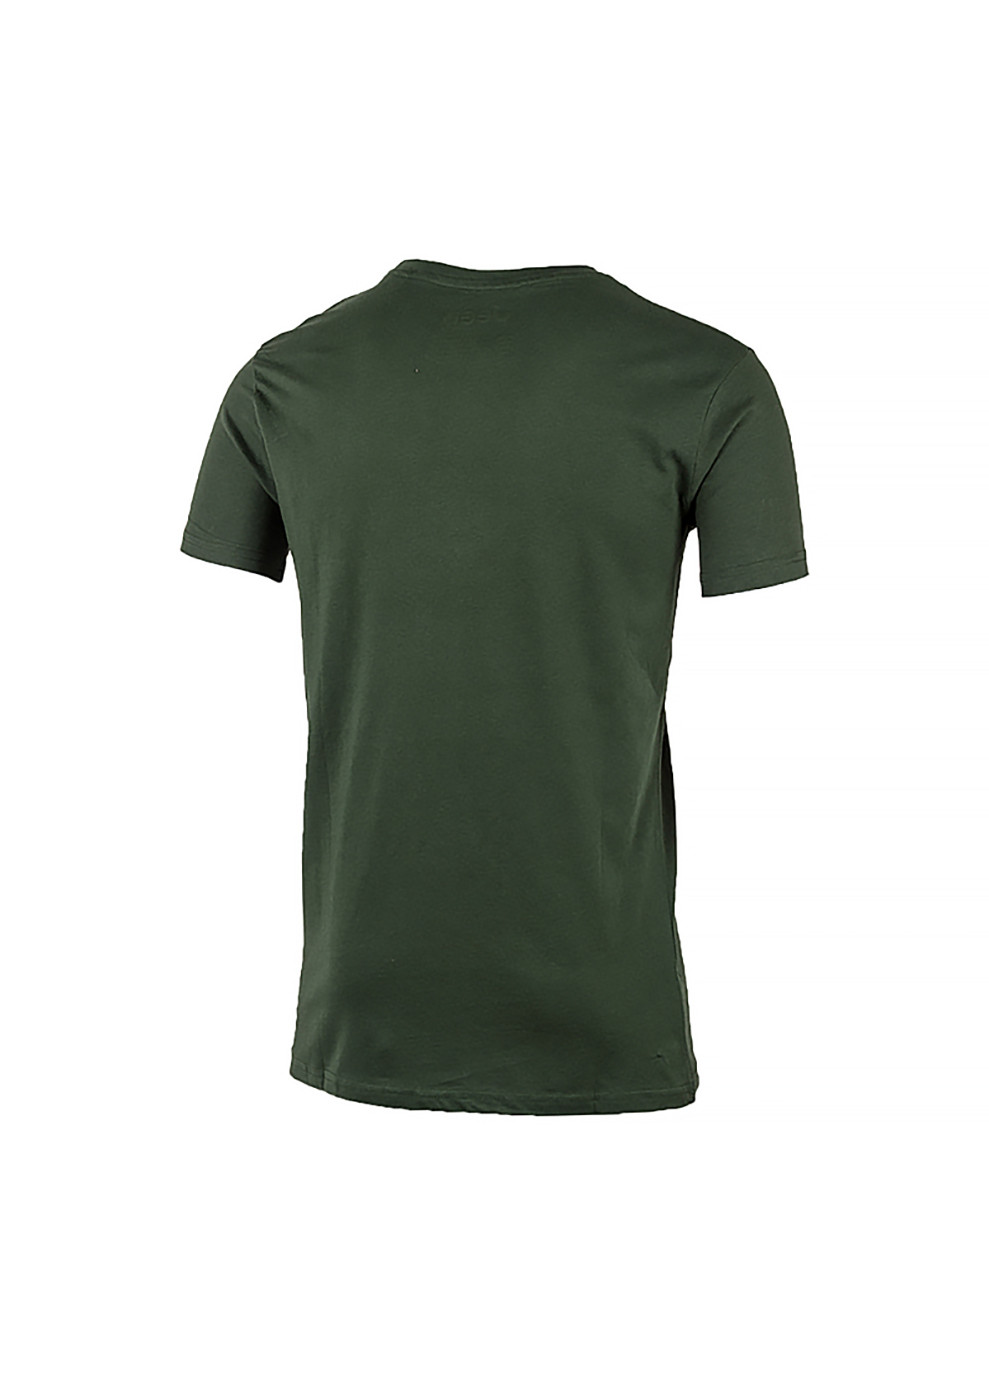 Хакі (оливкова) чоловіча футболка t-shirt contours j22w хакі 2xl (o102581-e853 2xl) Jeep